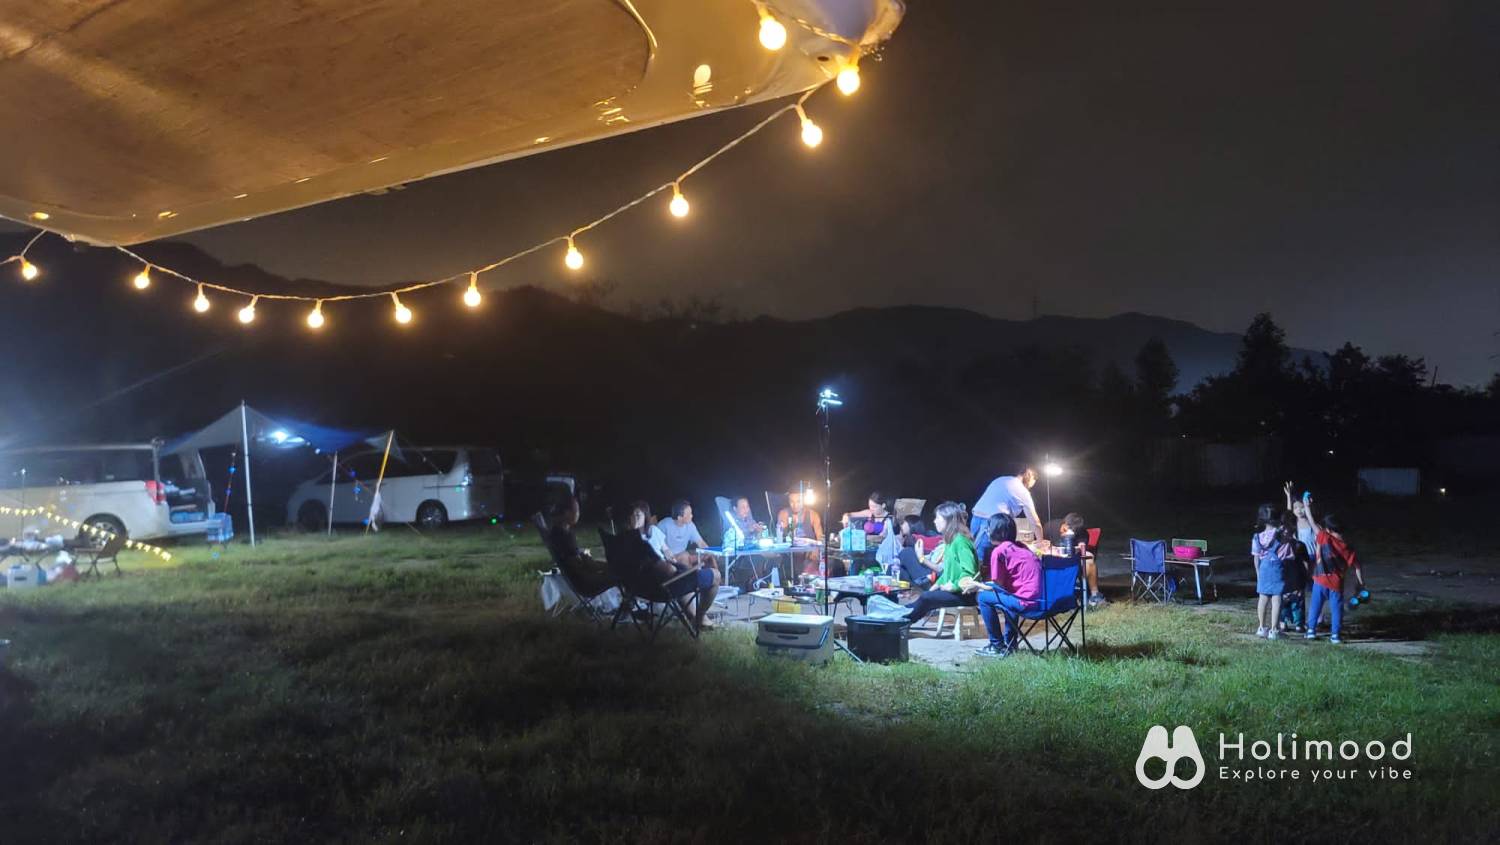 綠行鳥 - 大棠Car Camping + Glamping & 紅葉營地 【Greenobo】 2.0 Caravan For 4 8